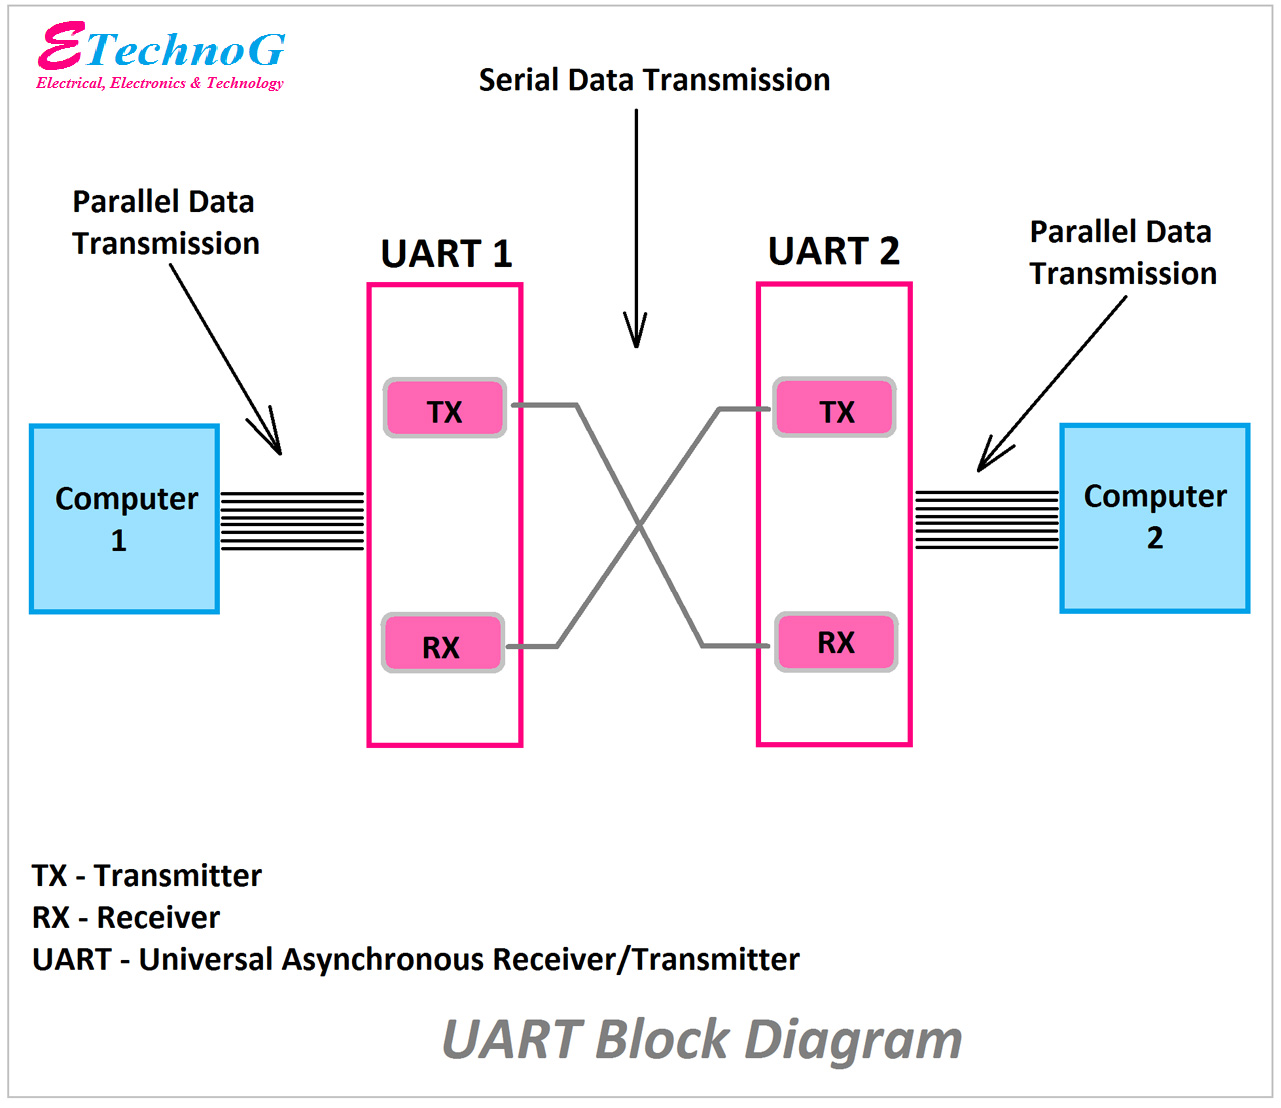 UART block diagram